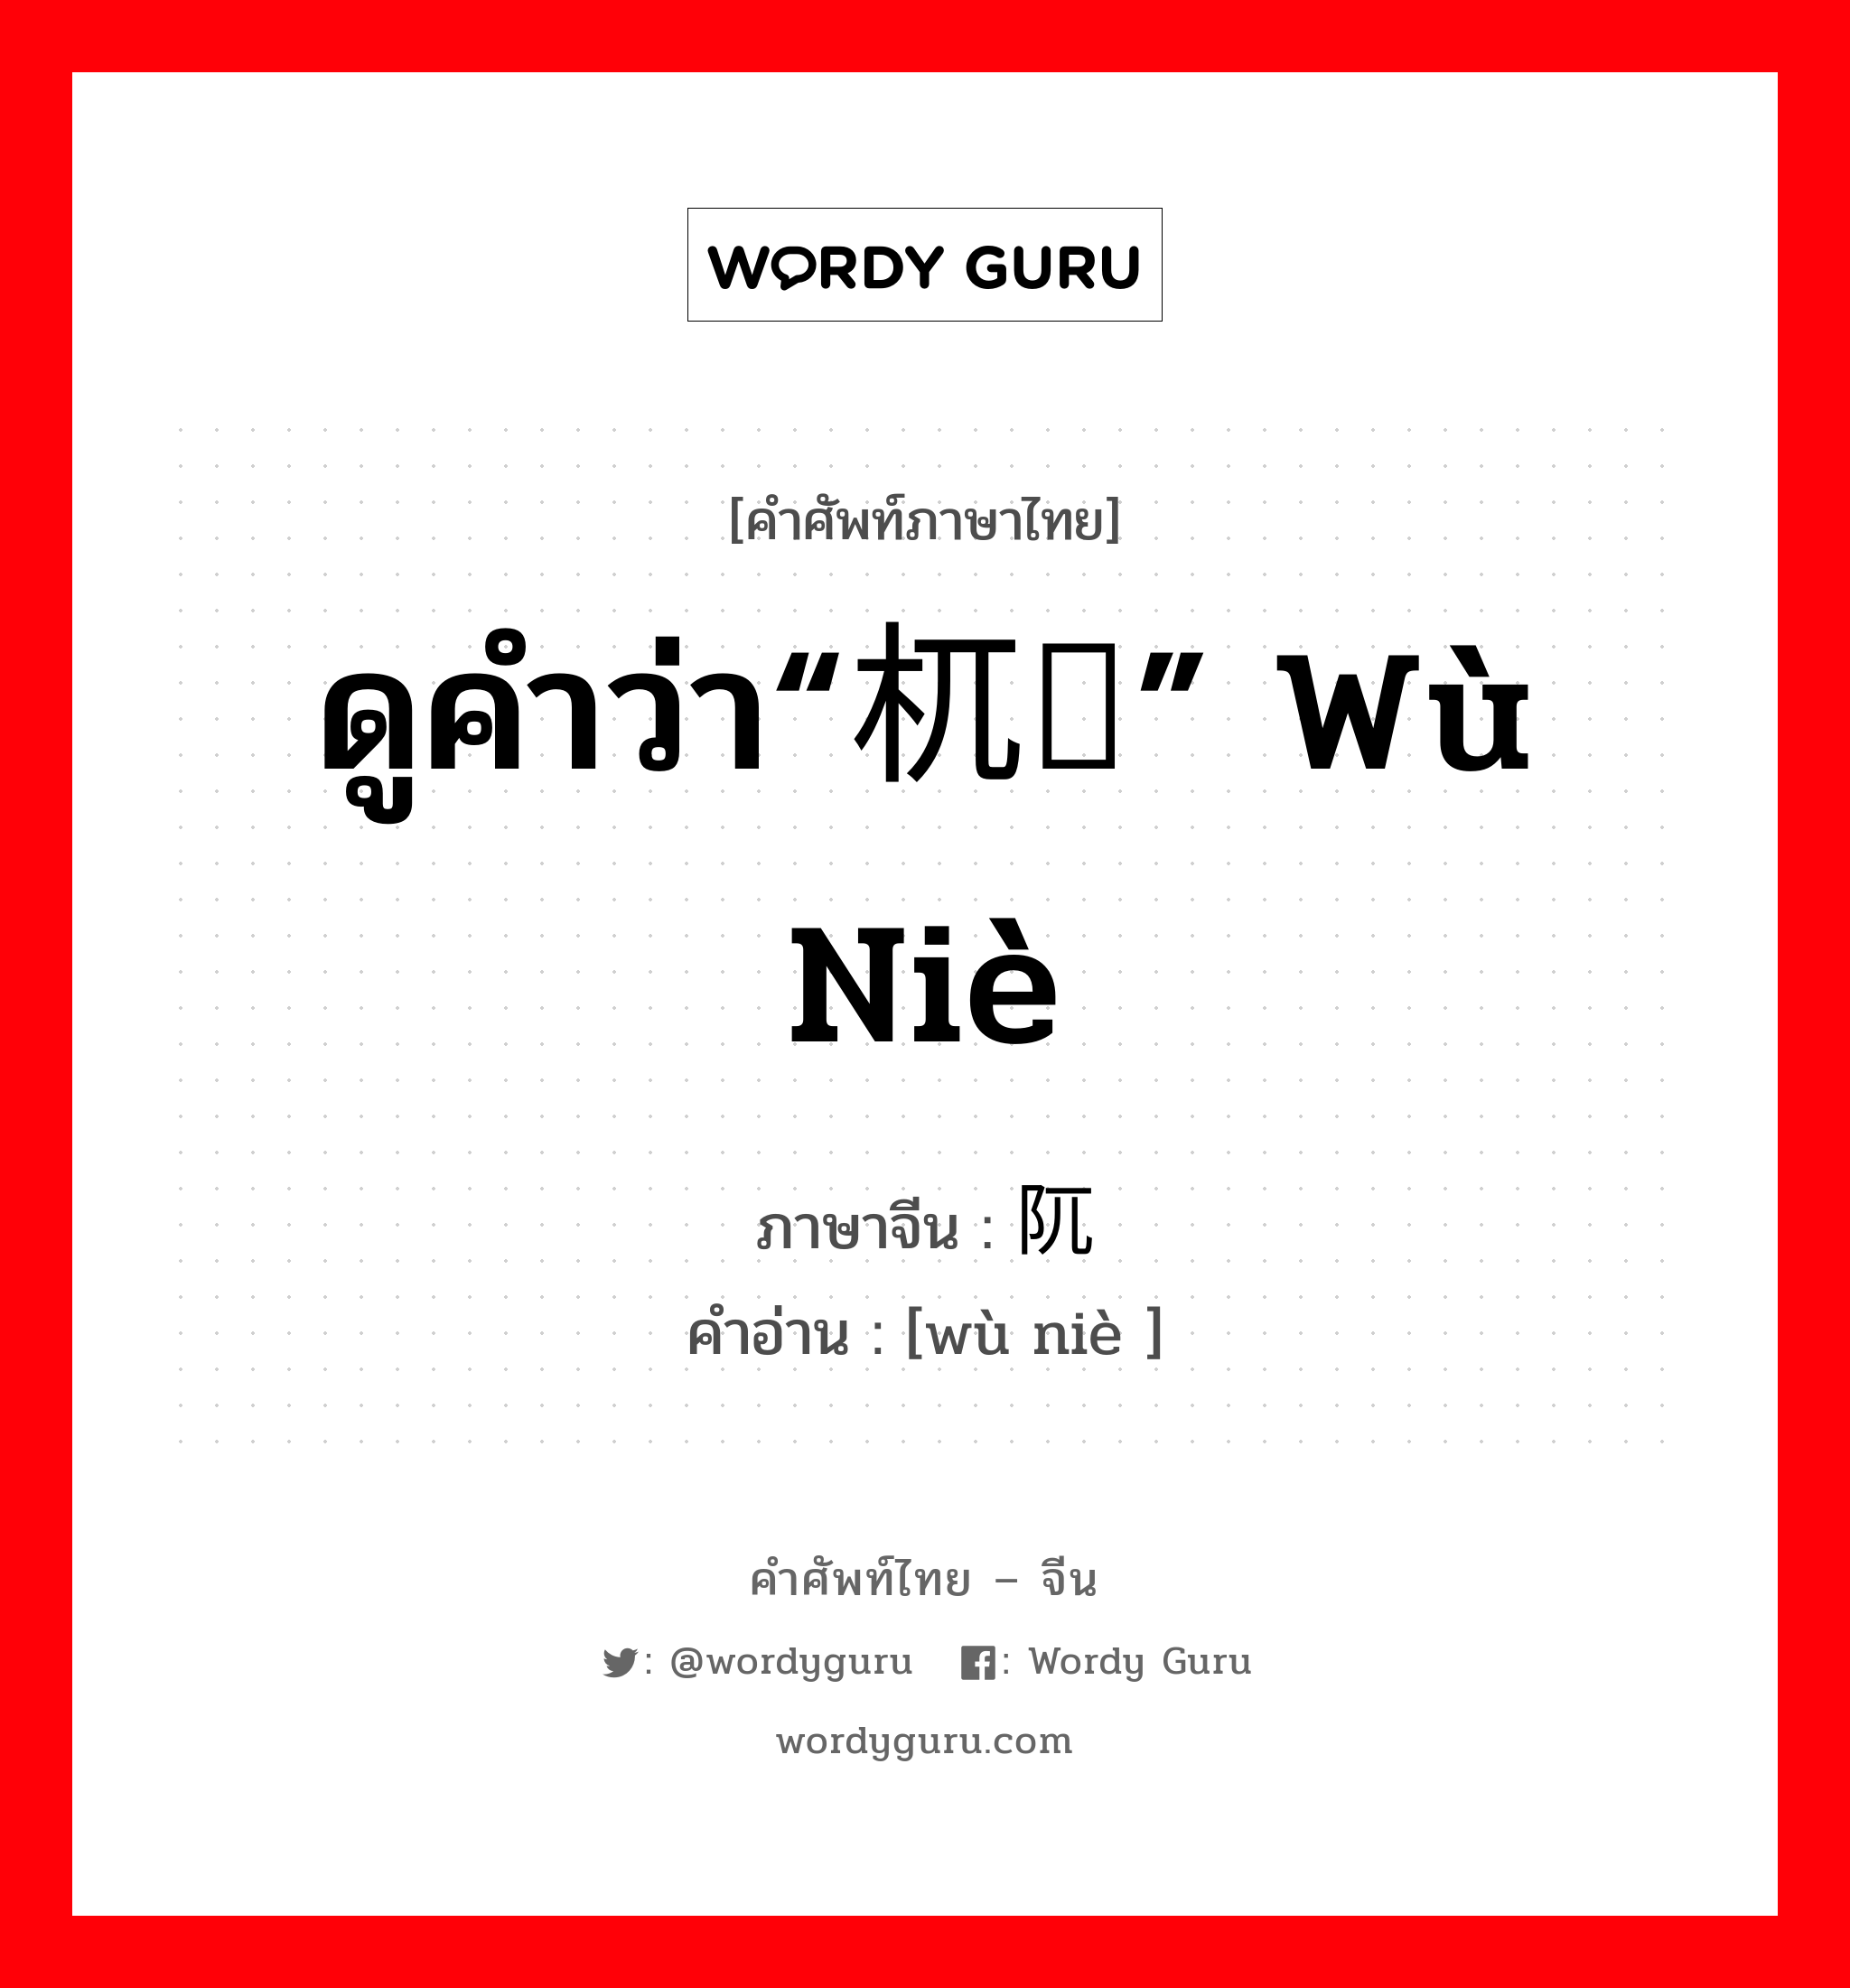 ดูคำว่า“杌陧” wù niè ภาษาจีนคืออะไร, คำศัพท์ภาษาไทย - จีน ดูคำว่า“杌陧” wù niè ภาษาจีน 阢陧 คำอ่าน [wù niè ]